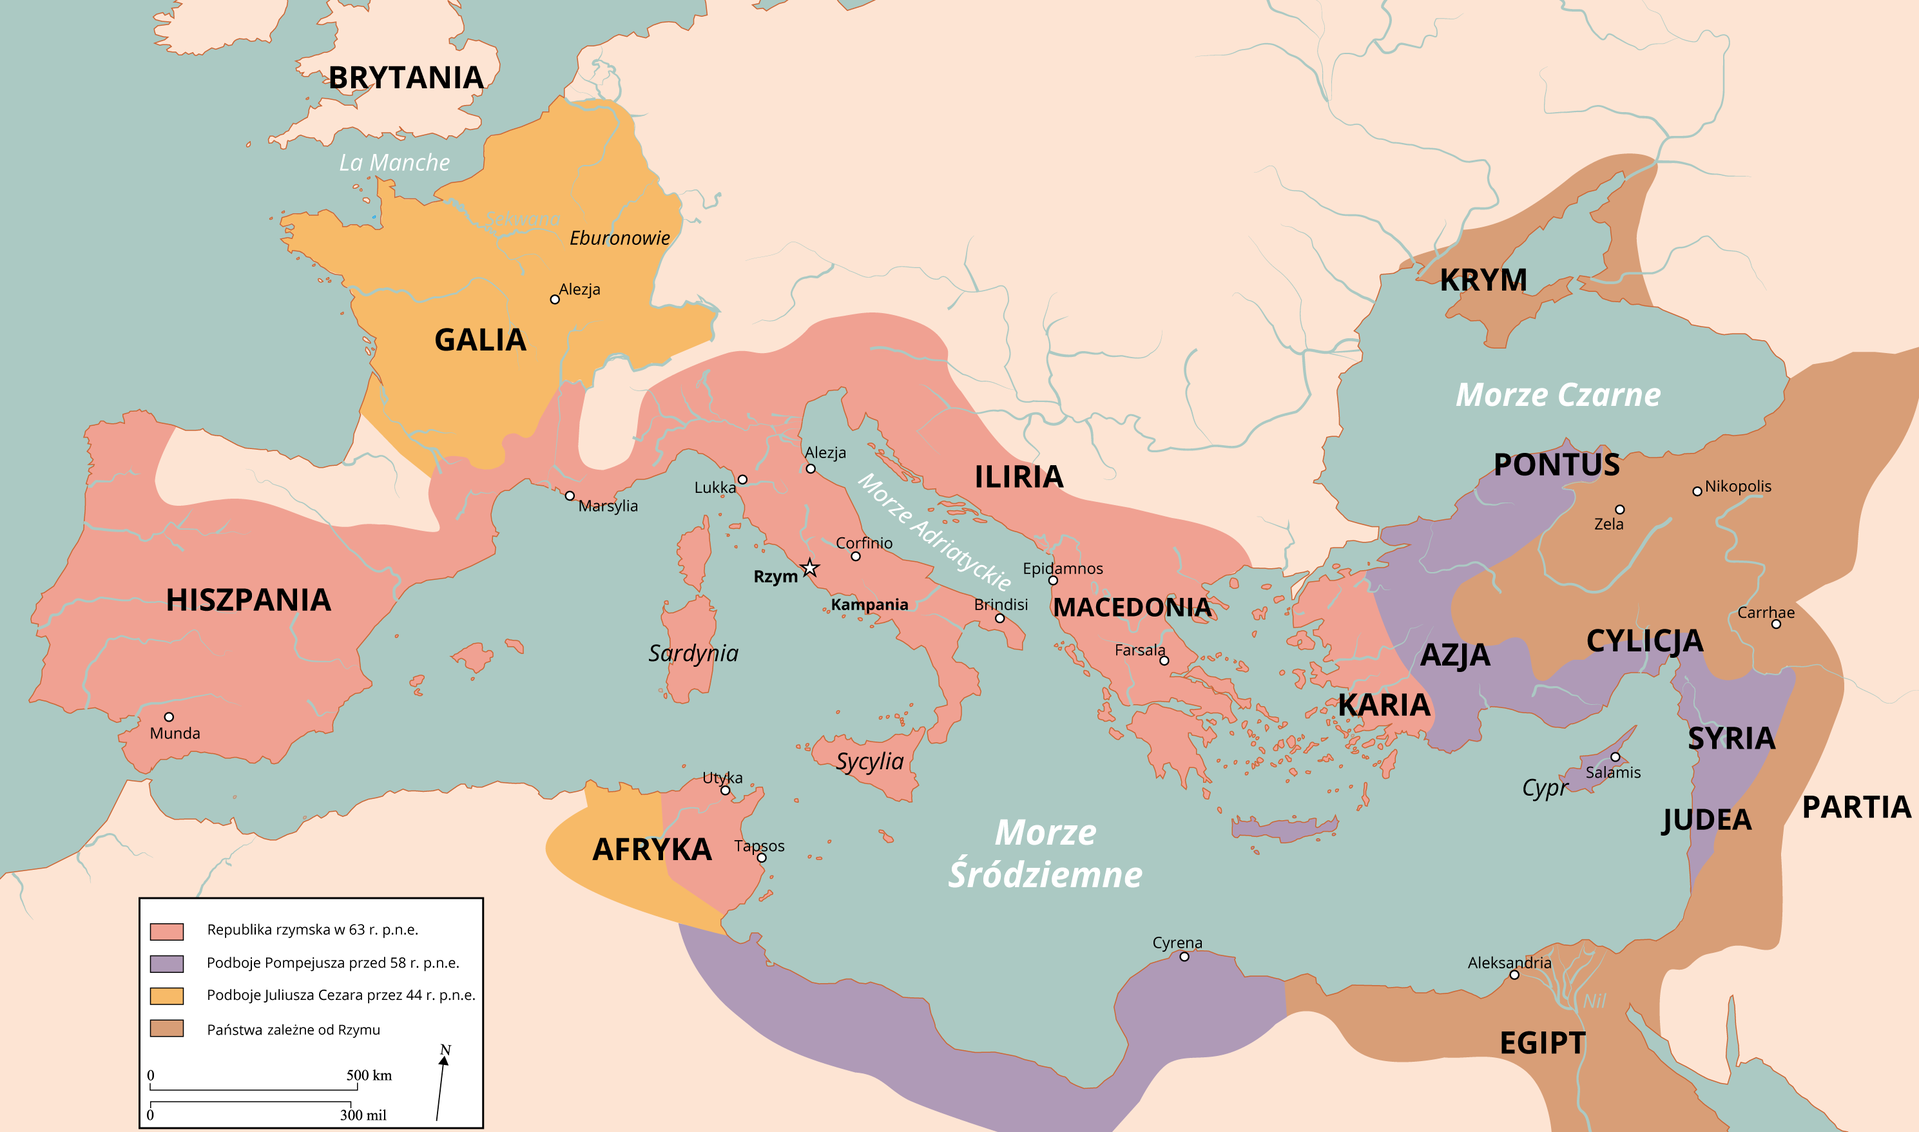 Mapa prezentująca imperium rzymskie w pierwszym wieku przed naszą erą. Ukazuje obszary republiki rzymskiej w 63 roku przed naszą erą obejmujące obszar Półwyspu Iberyjskiego (Obecna Hiszpania i Portugalia), południową część współczesnej Francji, Półwysep Apeniński, Sardynię, Ilirię (starożytna kraina nad Adriatykiem, obejmująca tereny obecnej Chorwacji, Bośni i Hercegowiny, Czarnogóry), Półwysep Bałkański i Macedonię (obecna Grecja) oraz Karię (współczesna Turcja) oraz niewielki obszar północnej Afryki (obecnie obszar Tunezji). Ukazane są także podboje Pompejusza przed 58 rokiem przed naszą erą: Azja Mniejsza, w tym Pont w Kapadocji, Syria, Judea. Północne wybrzeże Afryki (współczesna Libia). Zaznaczono również podboje Juliusza Cezara przed 44 rokiem przed naszą erą: Galię (współczesna Francja i Szwajcaria) i północną część wybrzeża Afryki (fragment współczesnej Algierii). W okresie tym państwami zależnymi od Rzymu były: Krym i Orient (Libia, Izrael, zachodnia Jordania, Egipt i Cyrenajka).